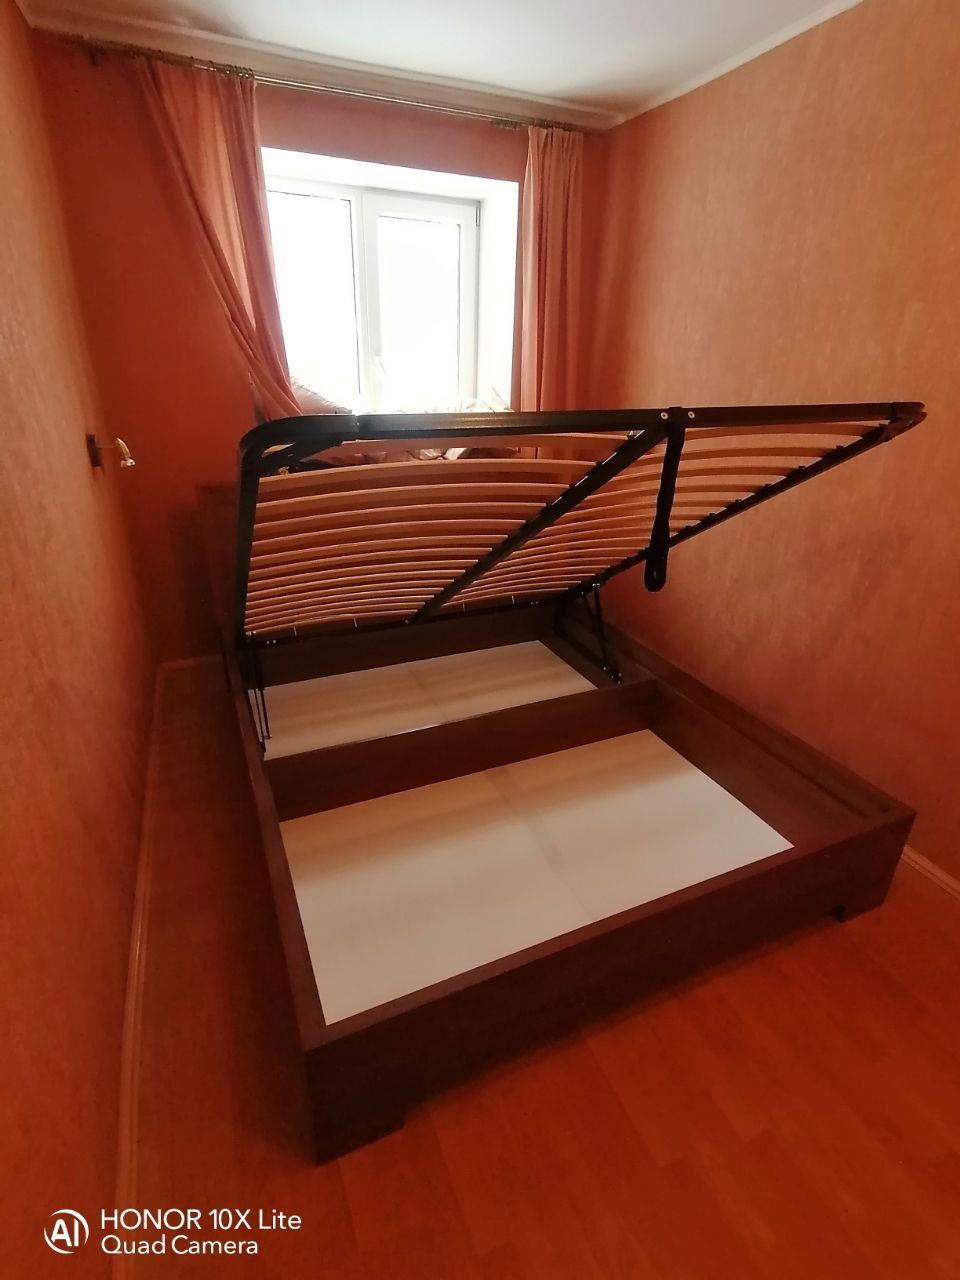 Двуспальная кровать "Мальта" 160 х 190 с ортопедическим основанием цвет сонома